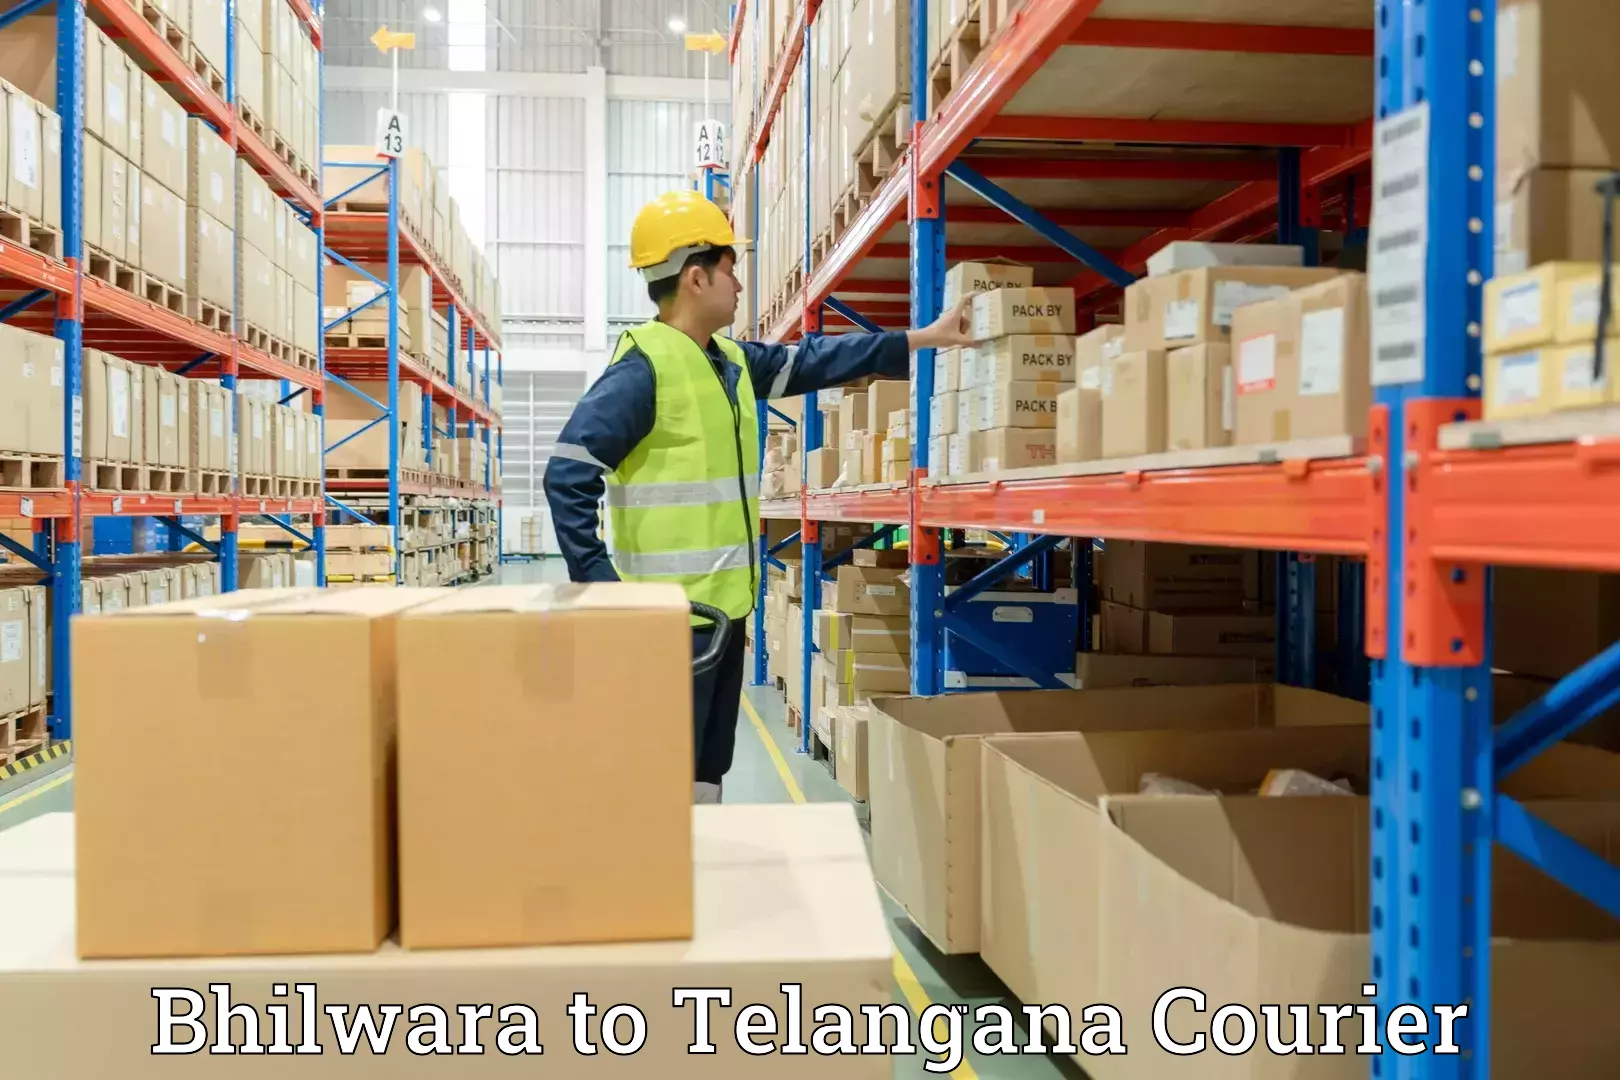 Furniture transport experts Bhilwara to Telangana